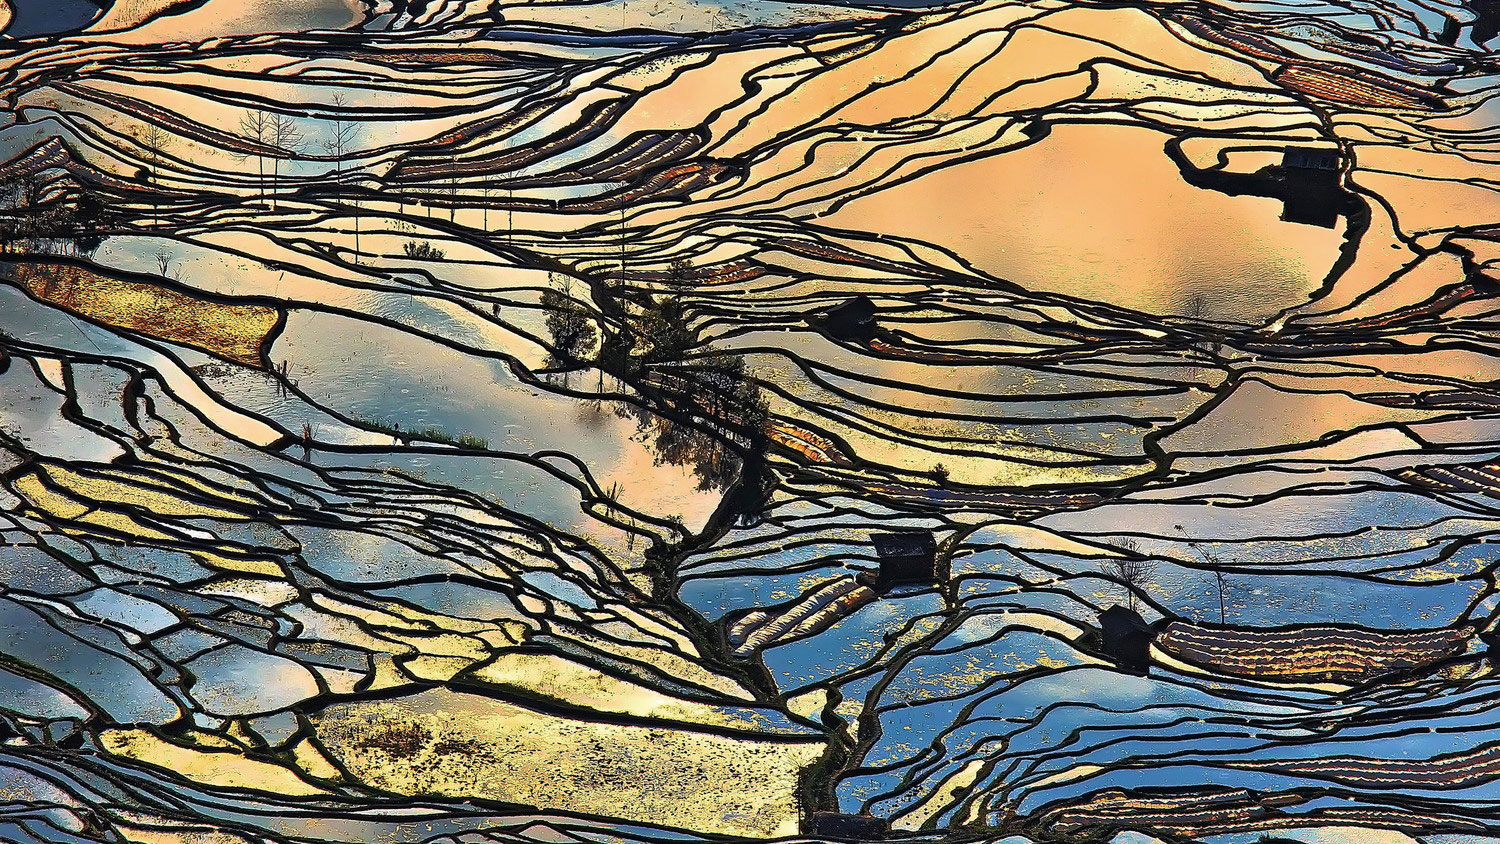 "Rice field" от Tang Pui Yee с PL-фильтром